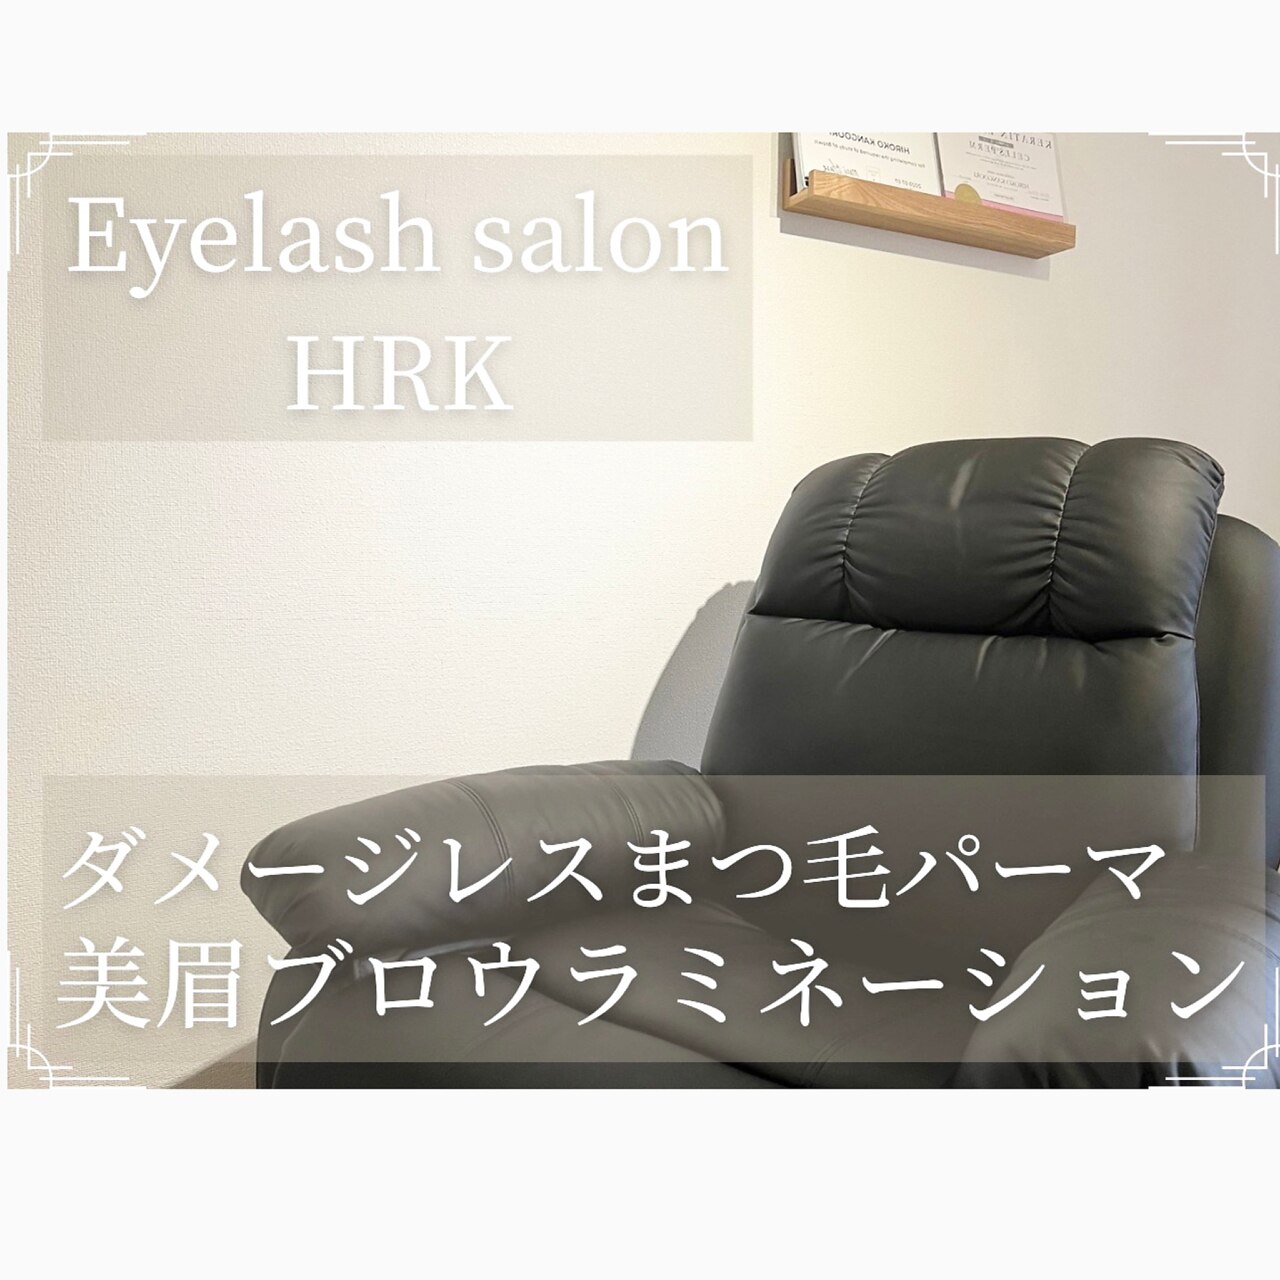 アイラッシュサロン エイチアールケー(Eyelash salon HRK)の紹介画像